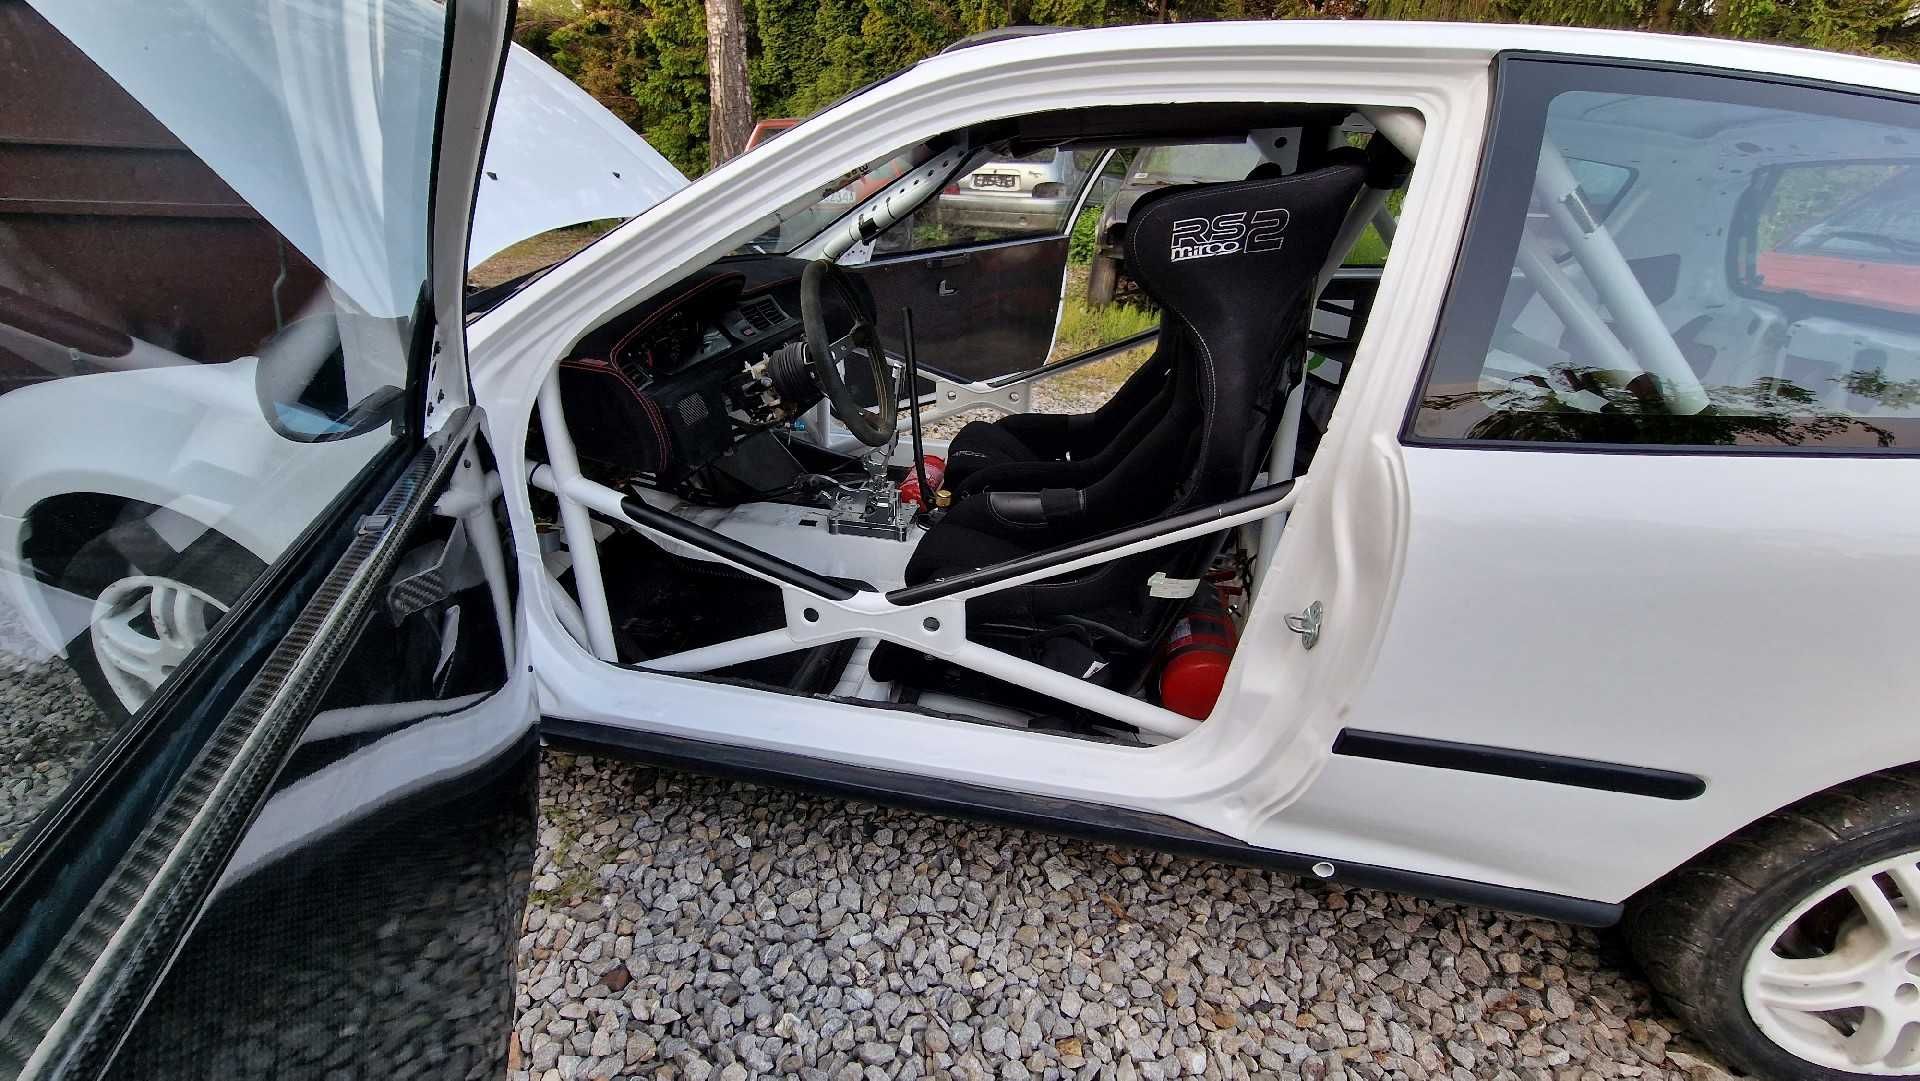 Honda Civic K20A2 jajko 5 proflex hondata rajdy carbon ktuned Okazja !